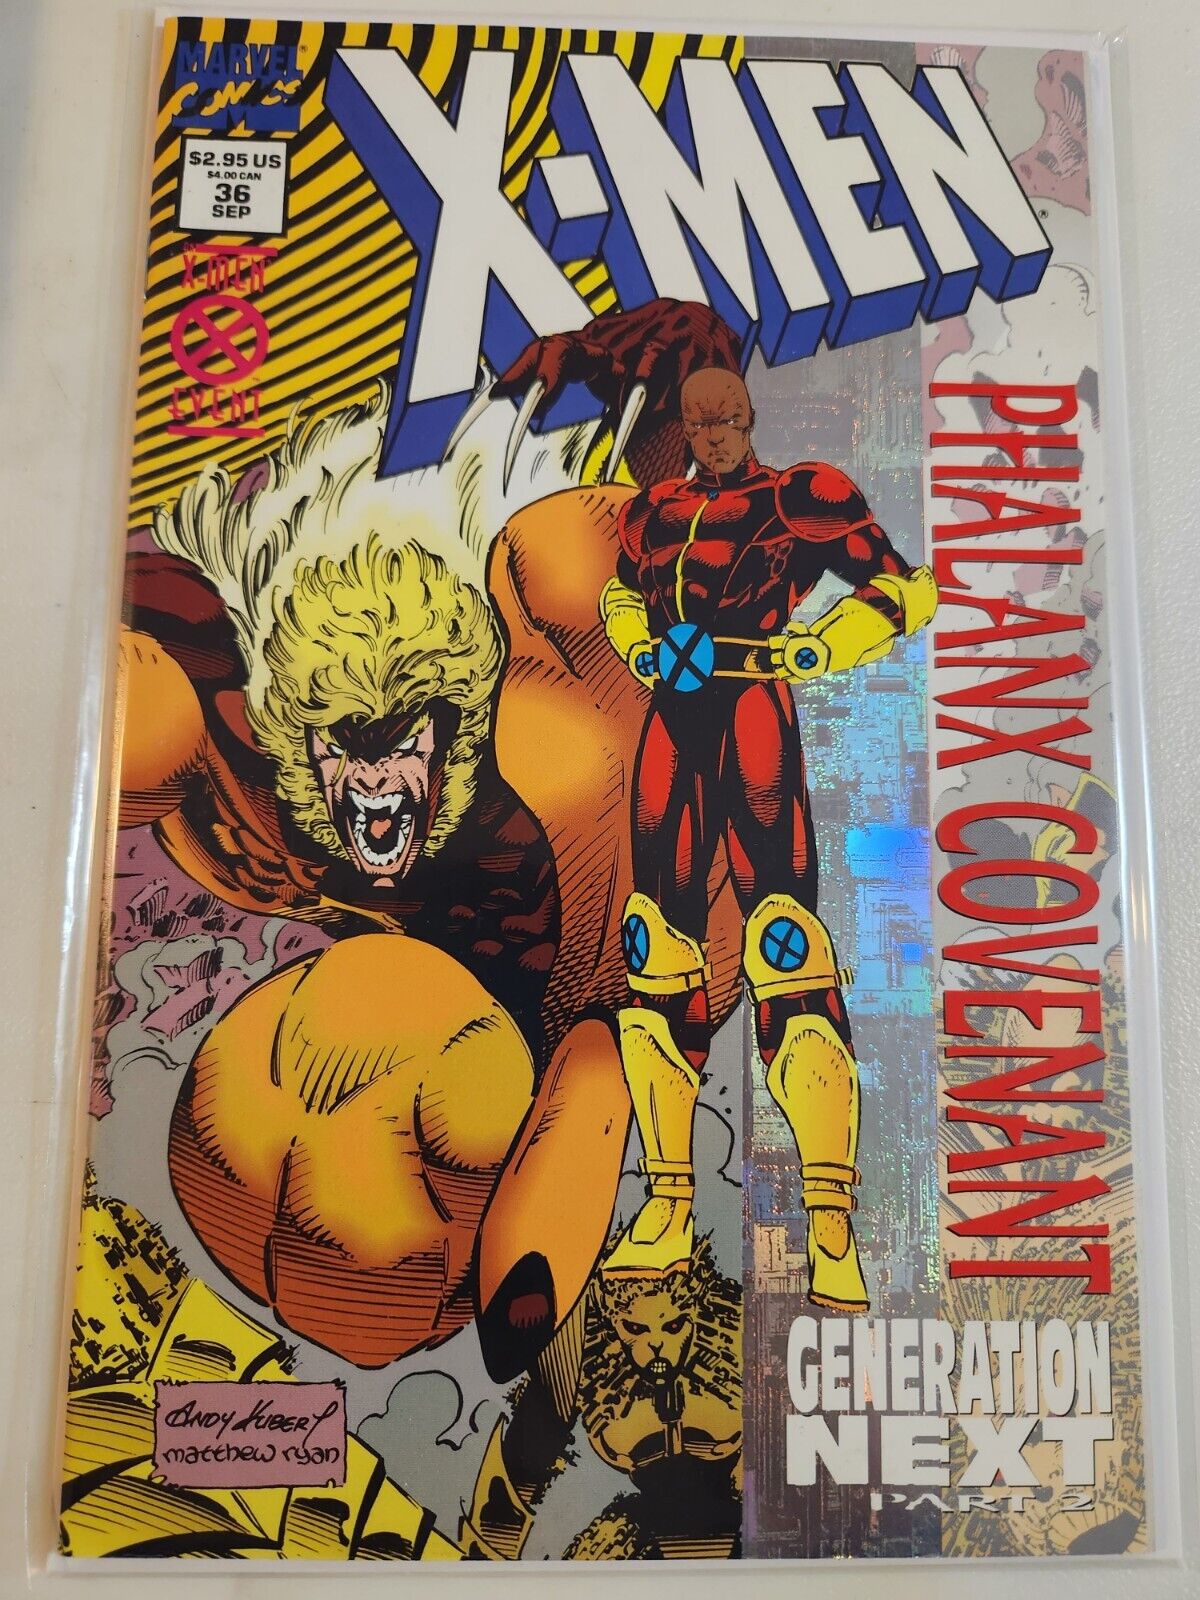 X-Men #36 MARVEL COMIC BOOK 9.2-9.4 AVG V26-183